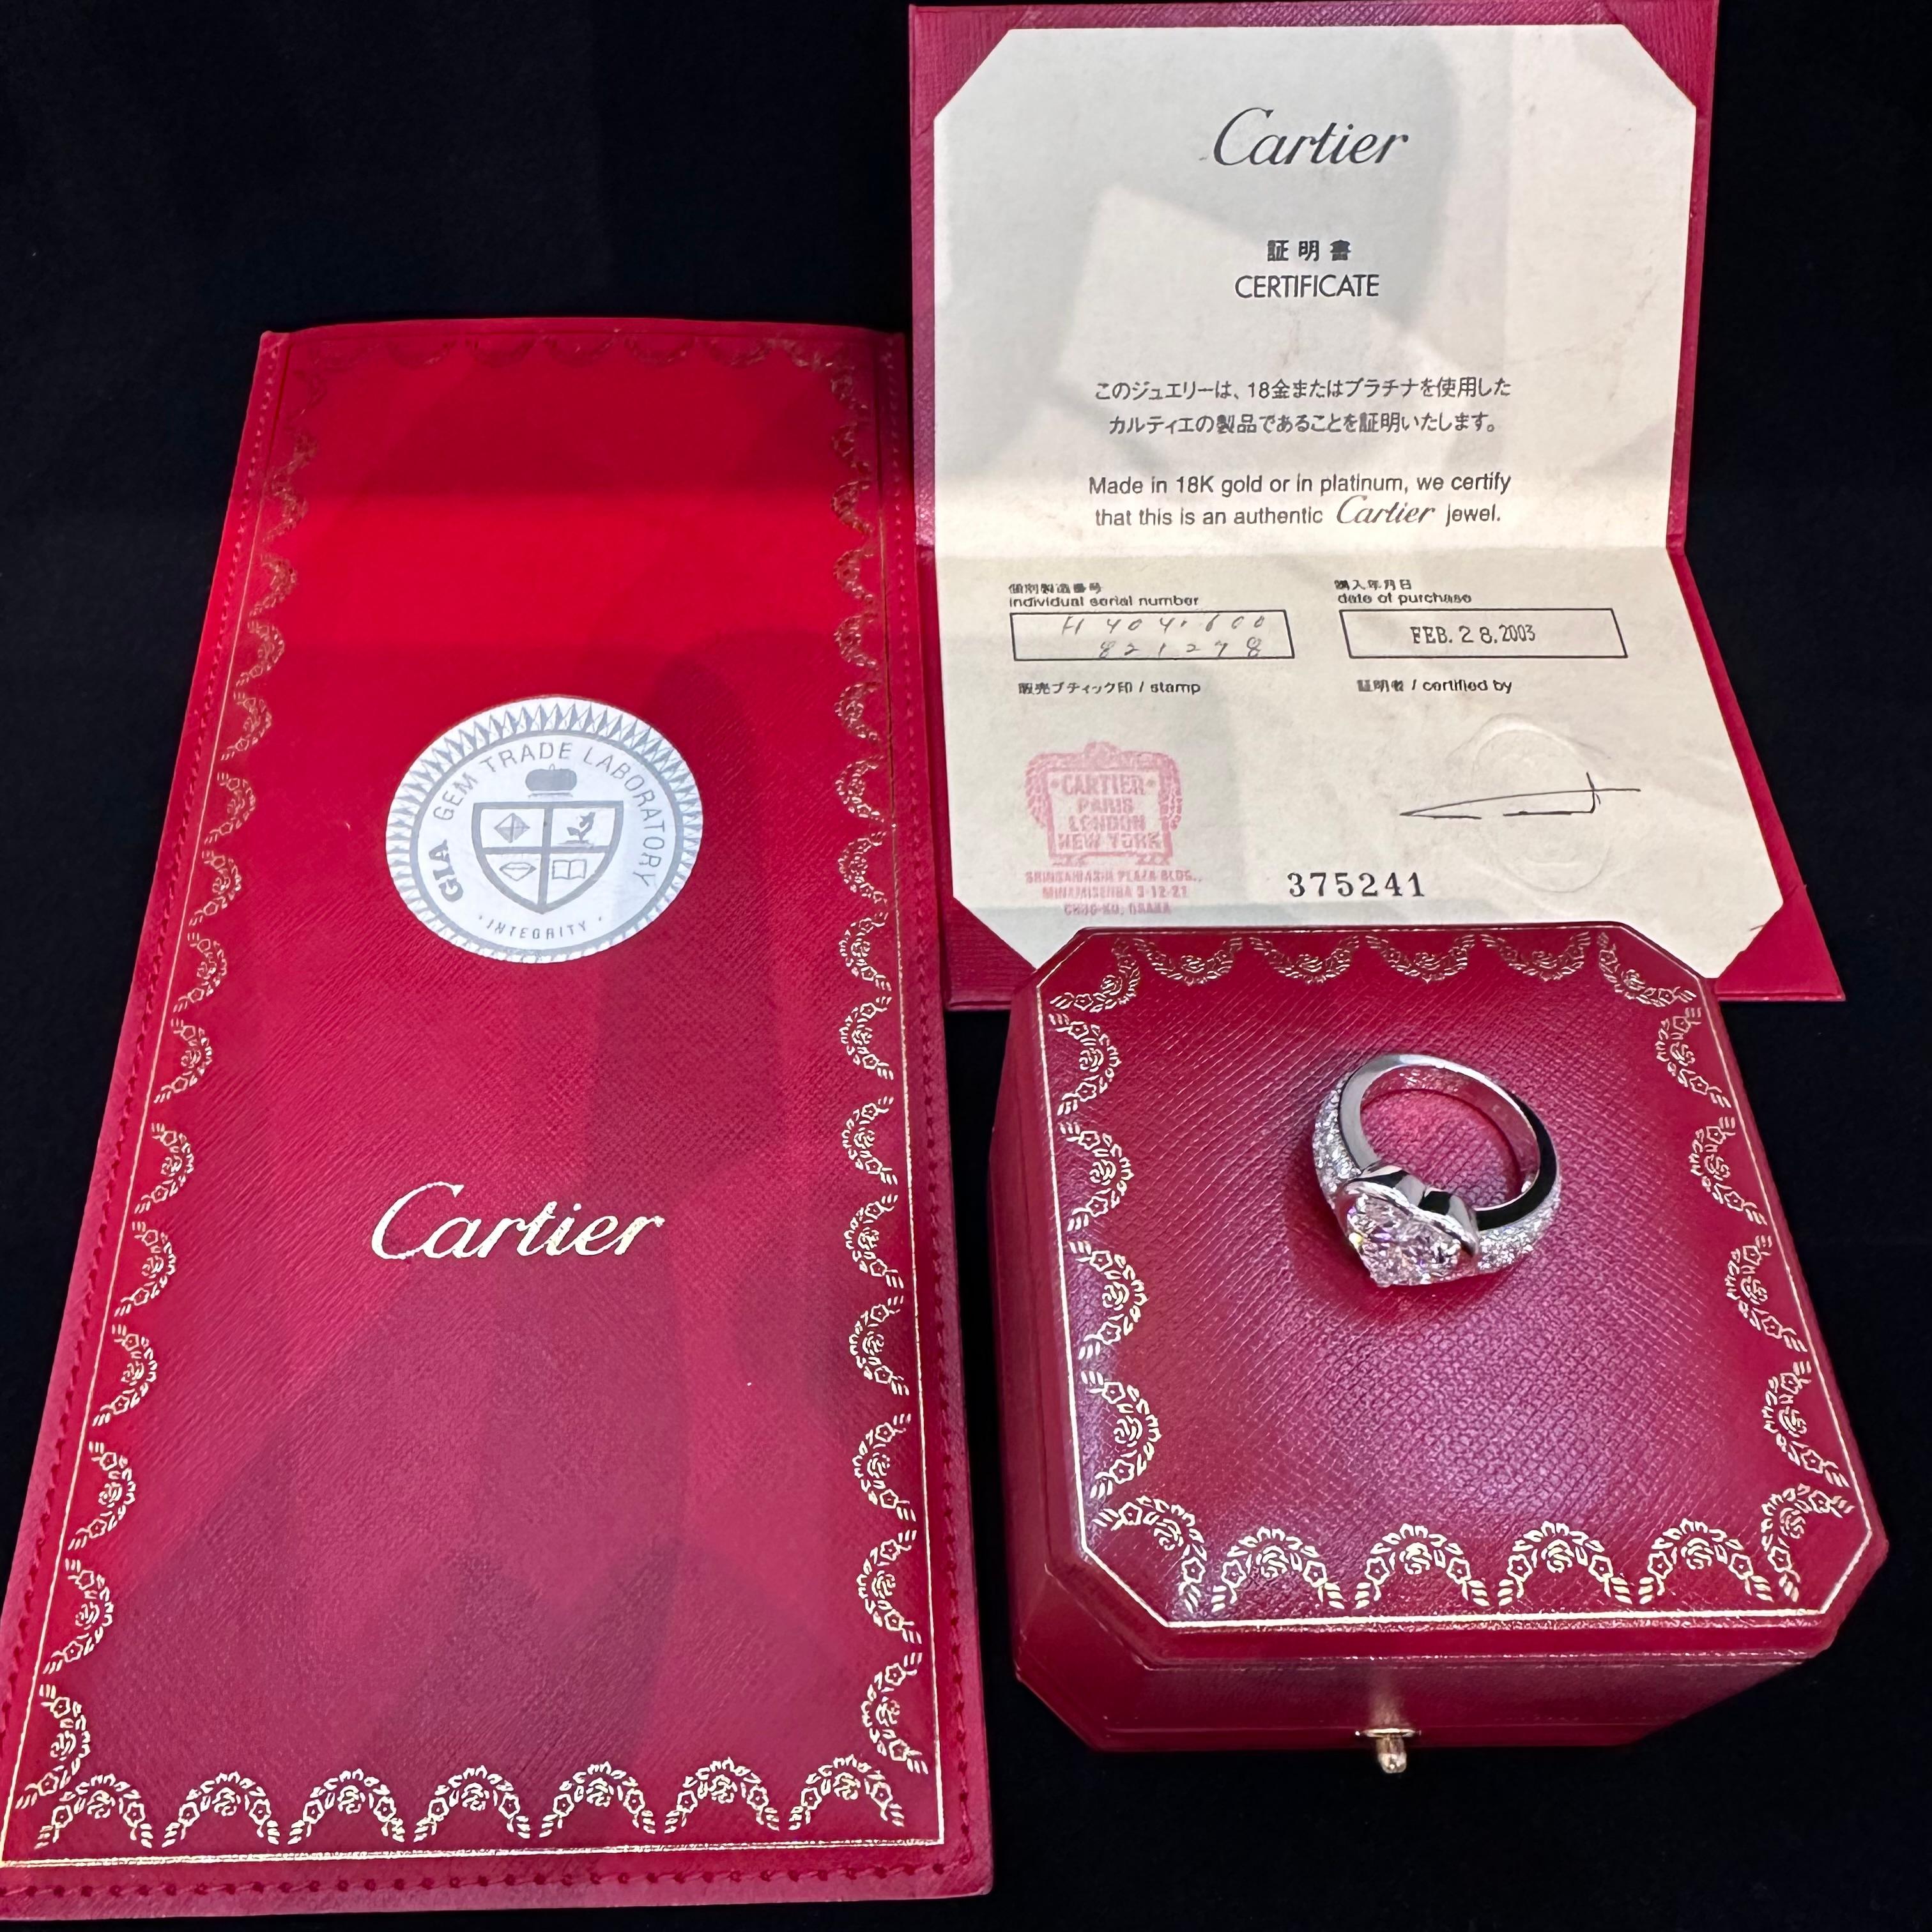 Cartier Paris Wichtiger Diamantring
3.32 ct D Innen F Drehung lupenrein  
18k Weißgold breite Band Stil Ring.
Das Zentrum Herzform ist 3,32 cts 
Zertifizierter Bericht  vom Gemmology Institute of America (GIA) als 